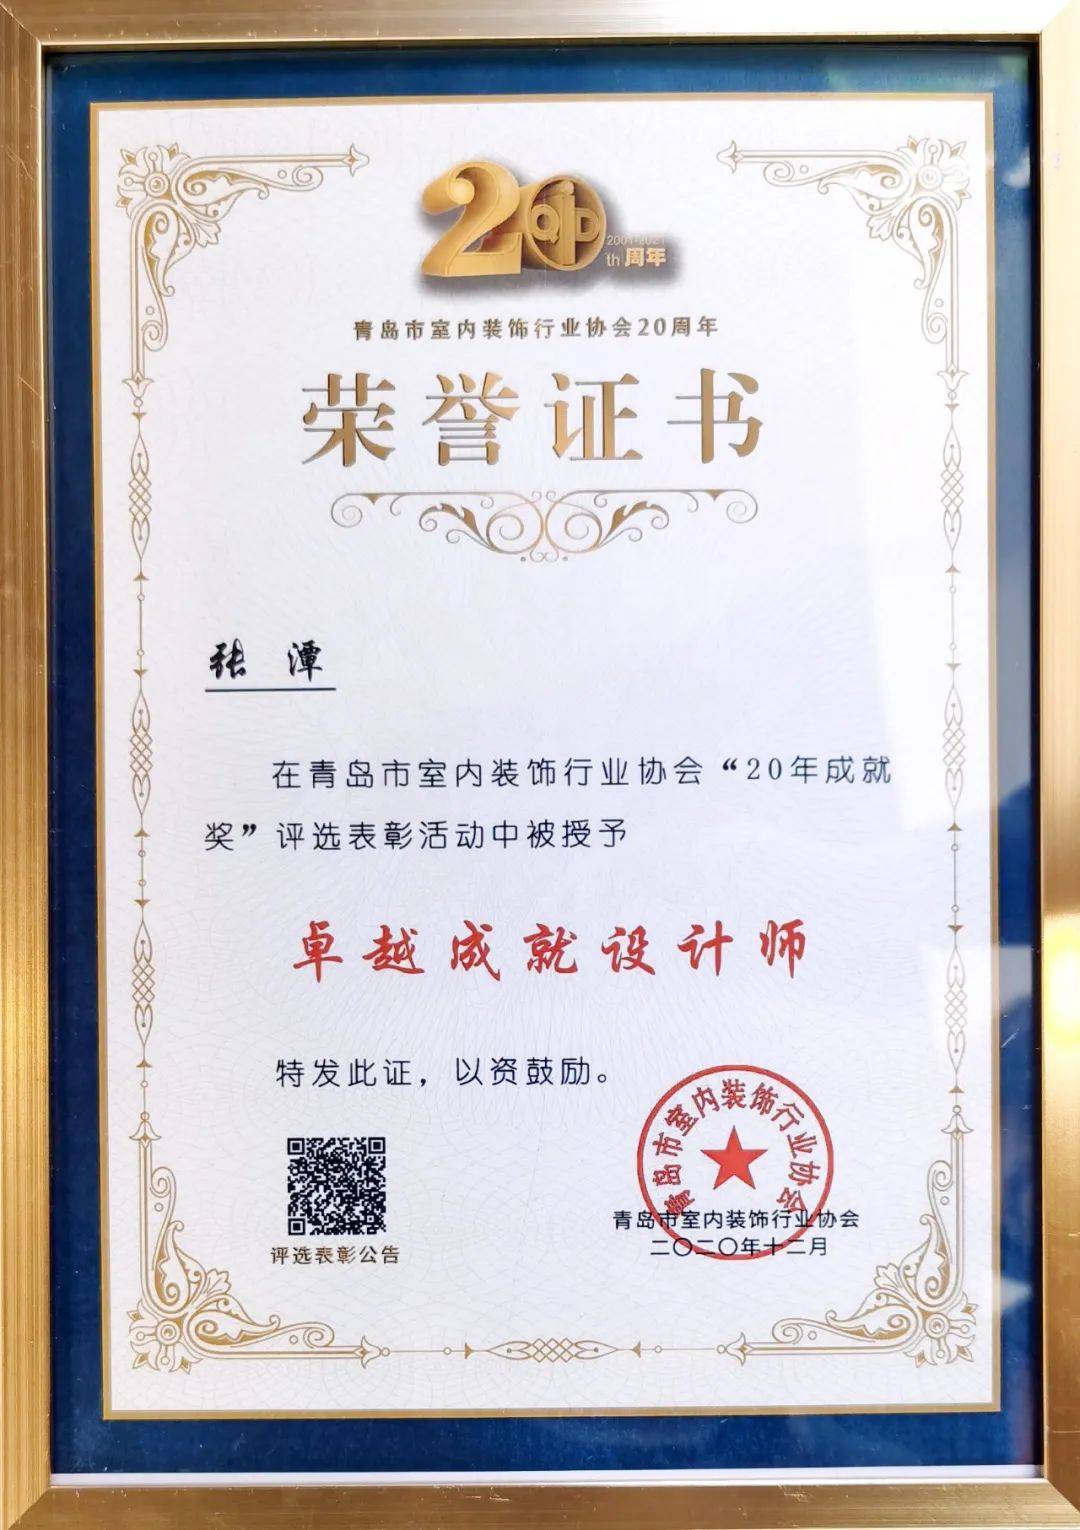 齐鲁工业大学艺术设计学院所获荣誉:中国注册高级室内设计师从业年限